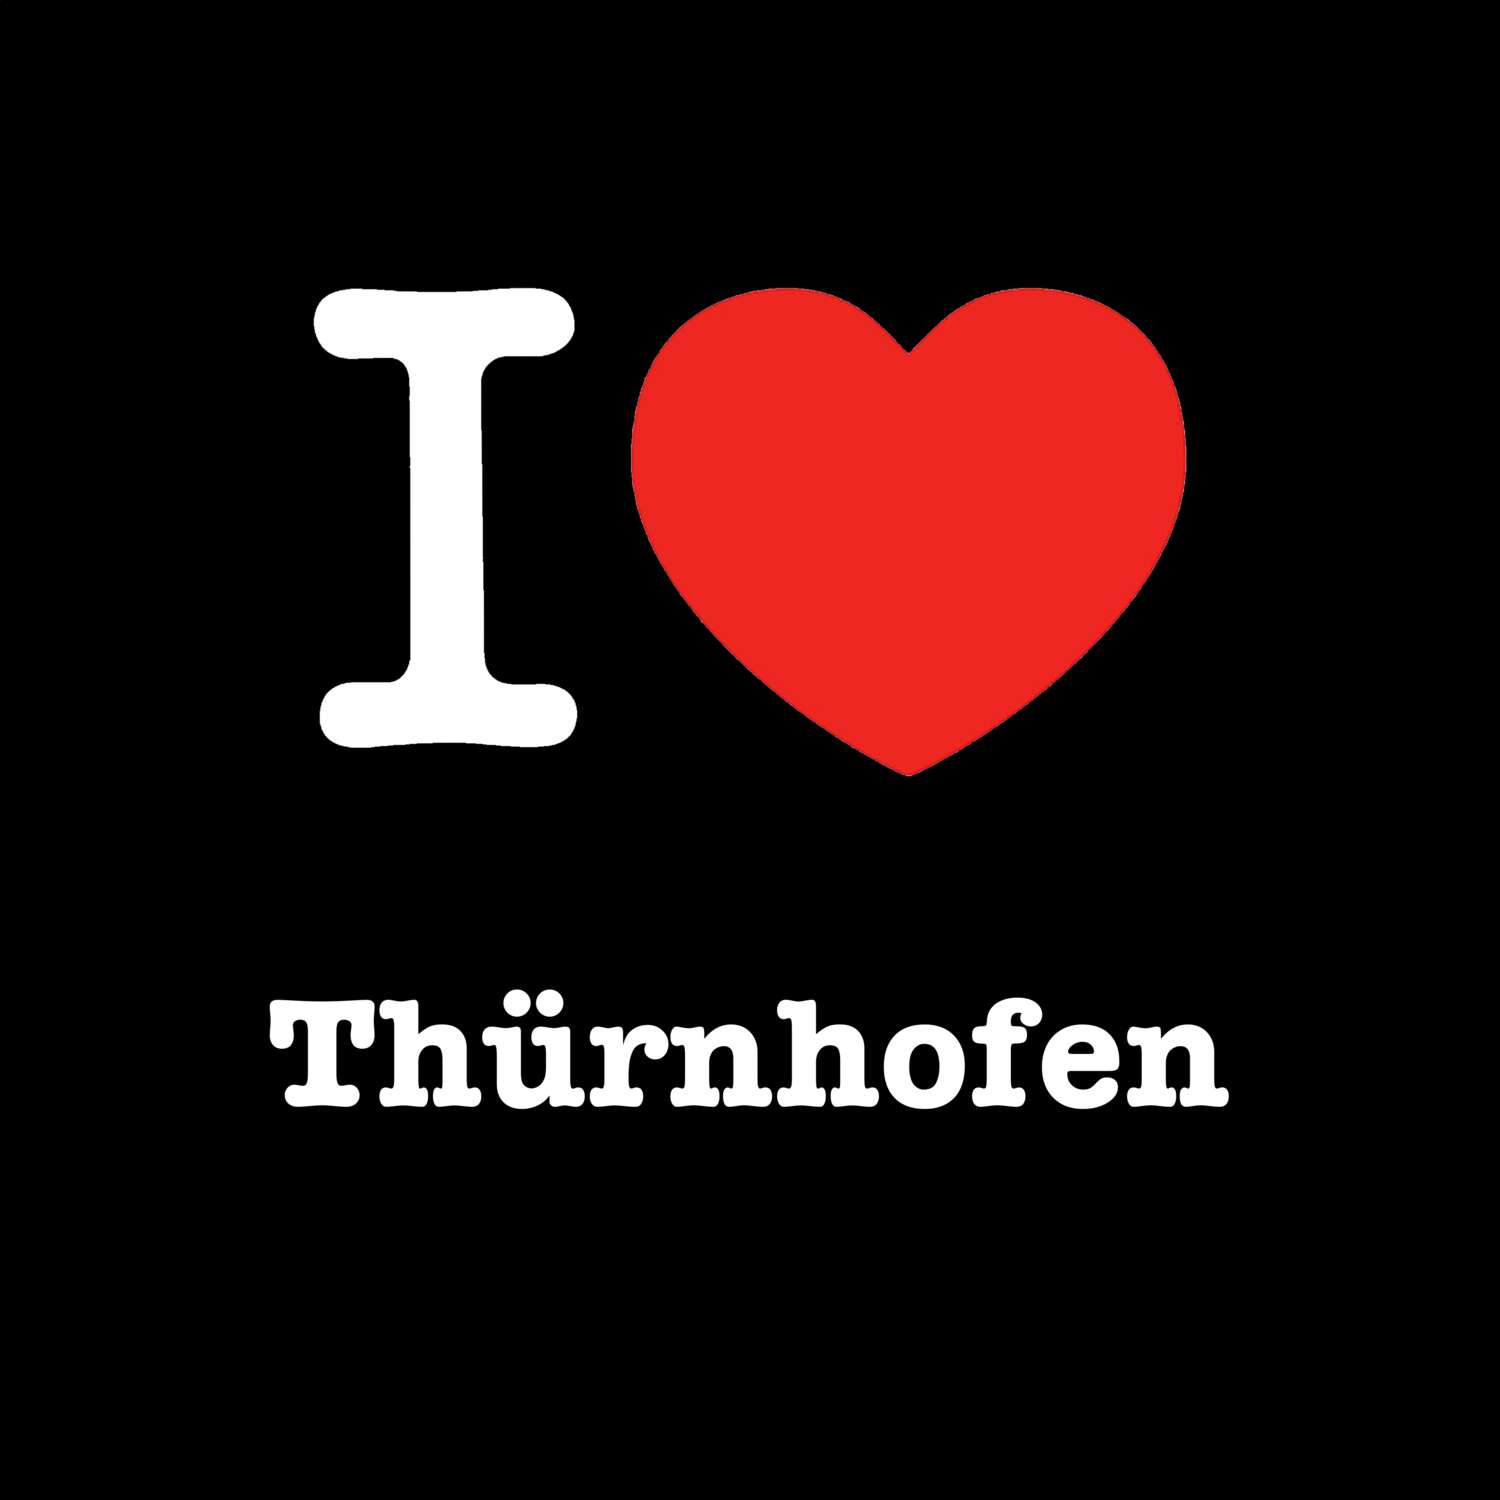 Thürnhofen T-Shirt »I love«